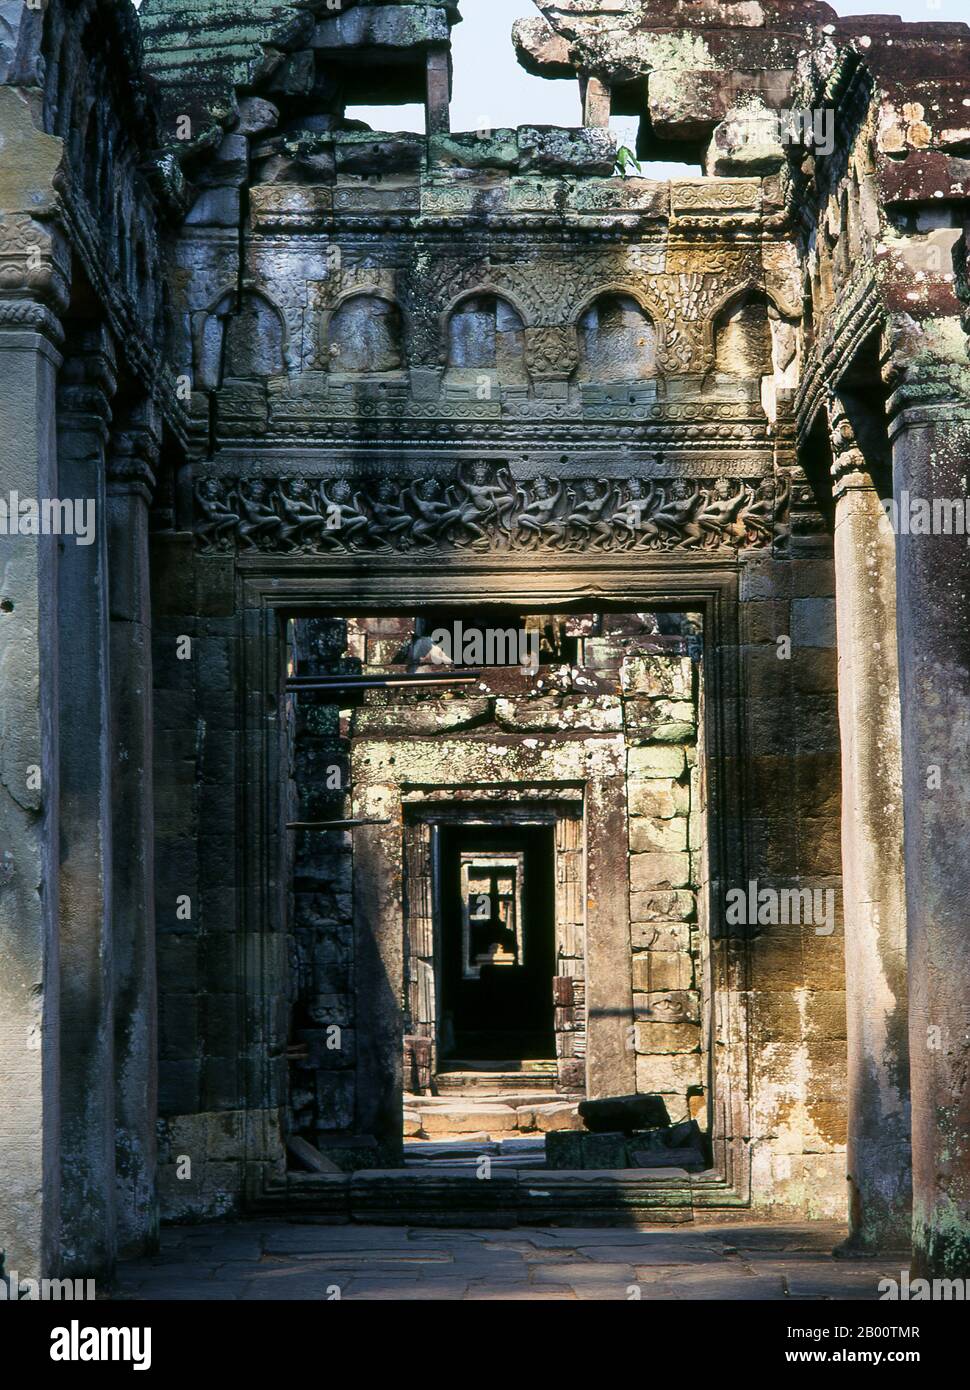 Cambogia: Sala dei ballerini, Preah Khan, Angkor. Preah Khan (Tempio della Sacra spada) è stato costruito nel tardo 12th ° secolo (1191) da Jayavarman VII ed è situato a nord di Angkor Thom. Il tempio fu costruito sul luogo della vittoria di Jayavarman VII sui Chams invasori nel 1191. Era il centro di una grande organizzazione, con quasi 100.000 funzionari e funzionari. In un tempo era un'università buddista. La divinità primaria del tempio è la boddhisatva Avalokiteshvara, nella forma del padre di Jayavarman. Foto Stock